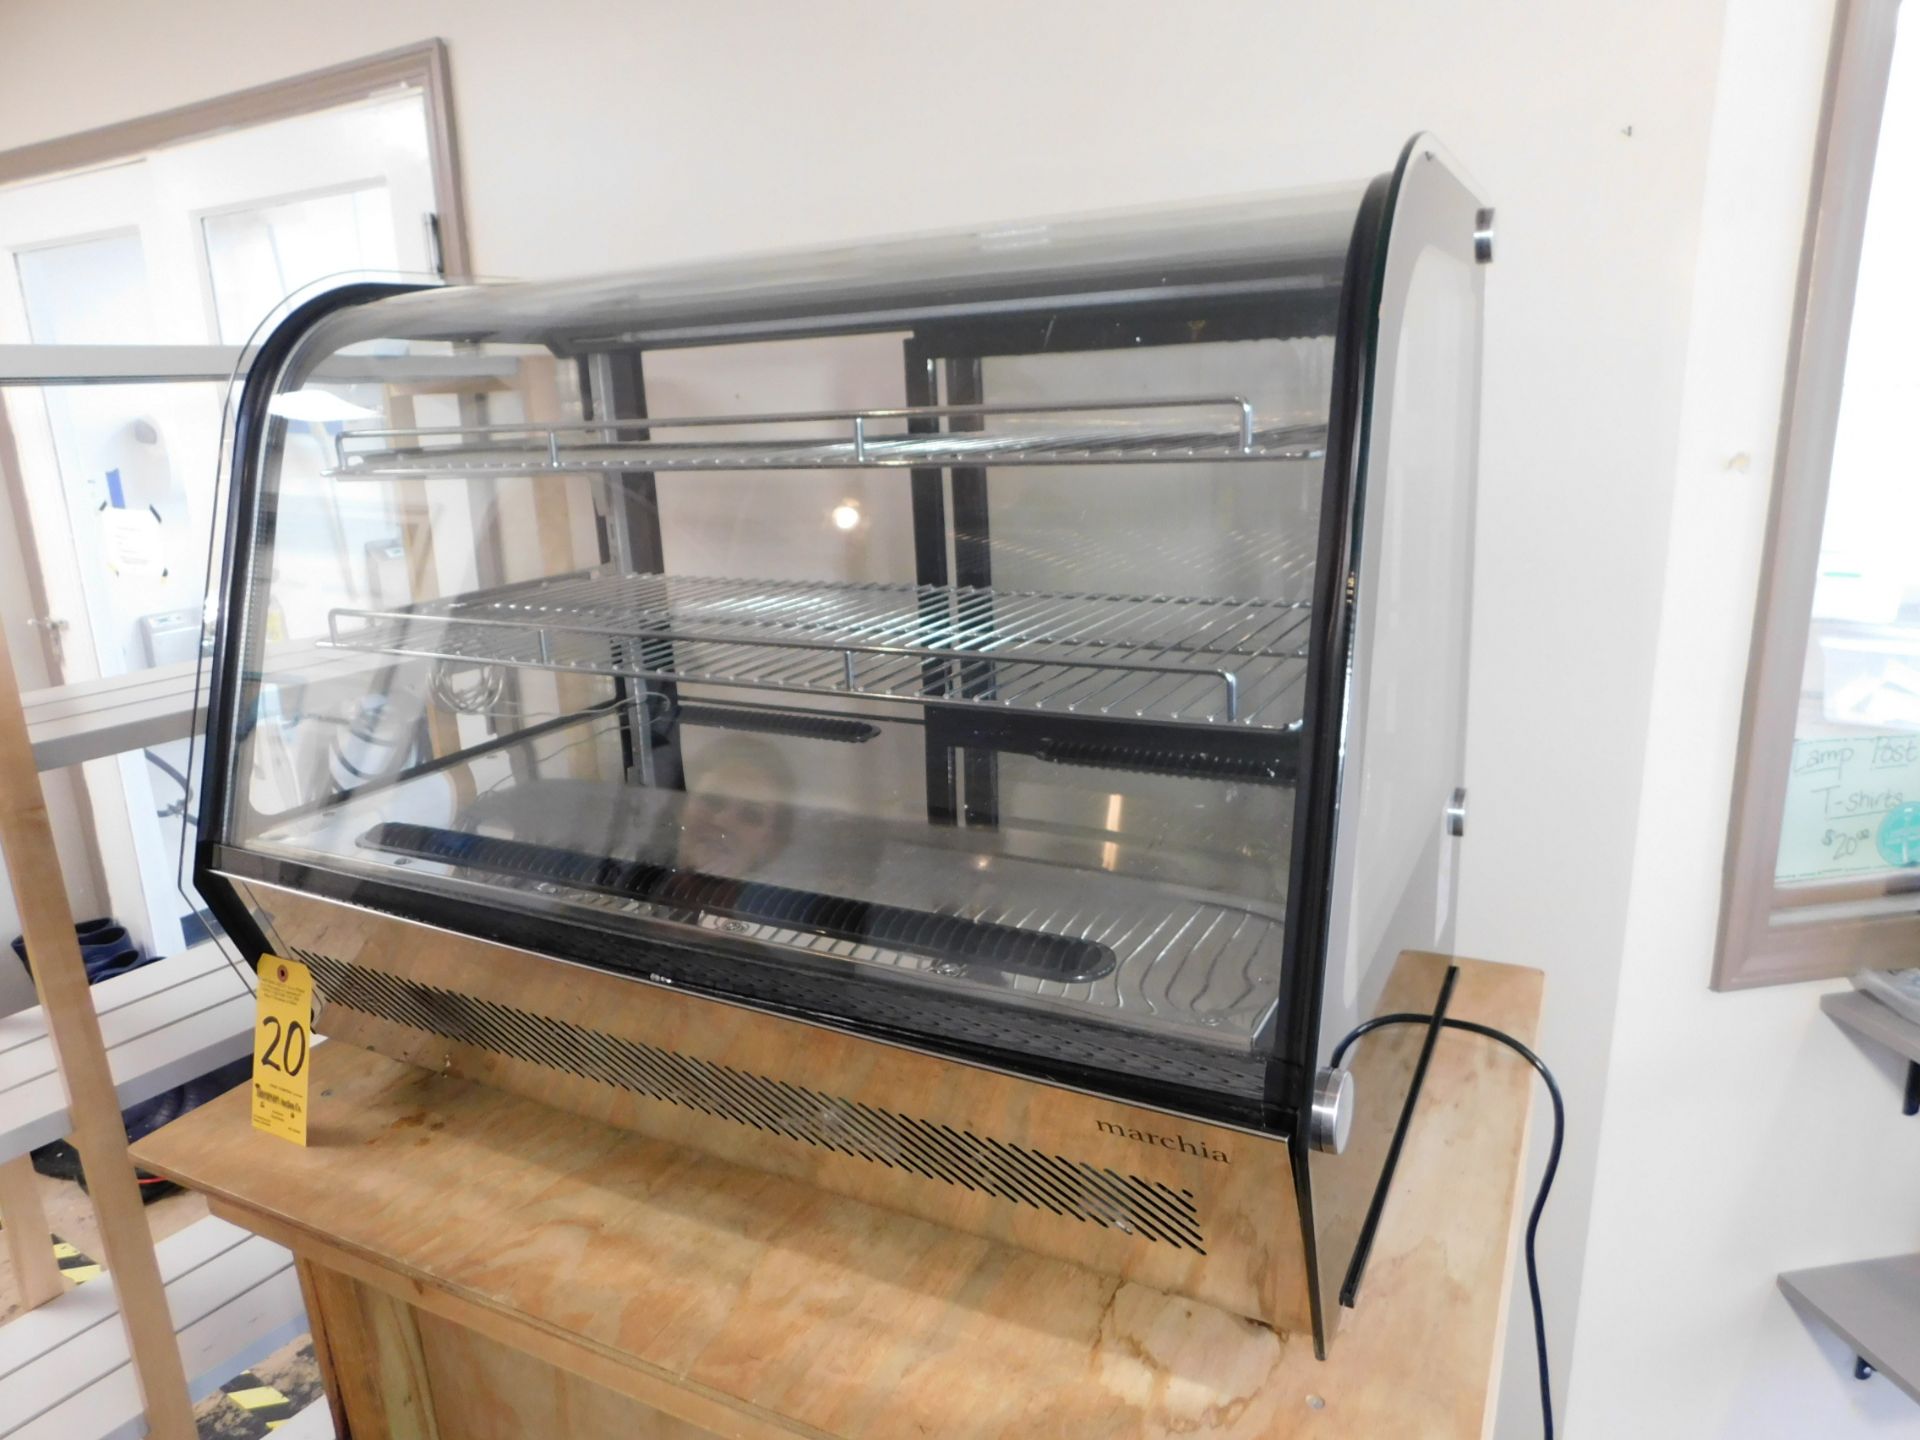 Marchia Refrigerated Countertop Deli Case, 36" , Model MDC160